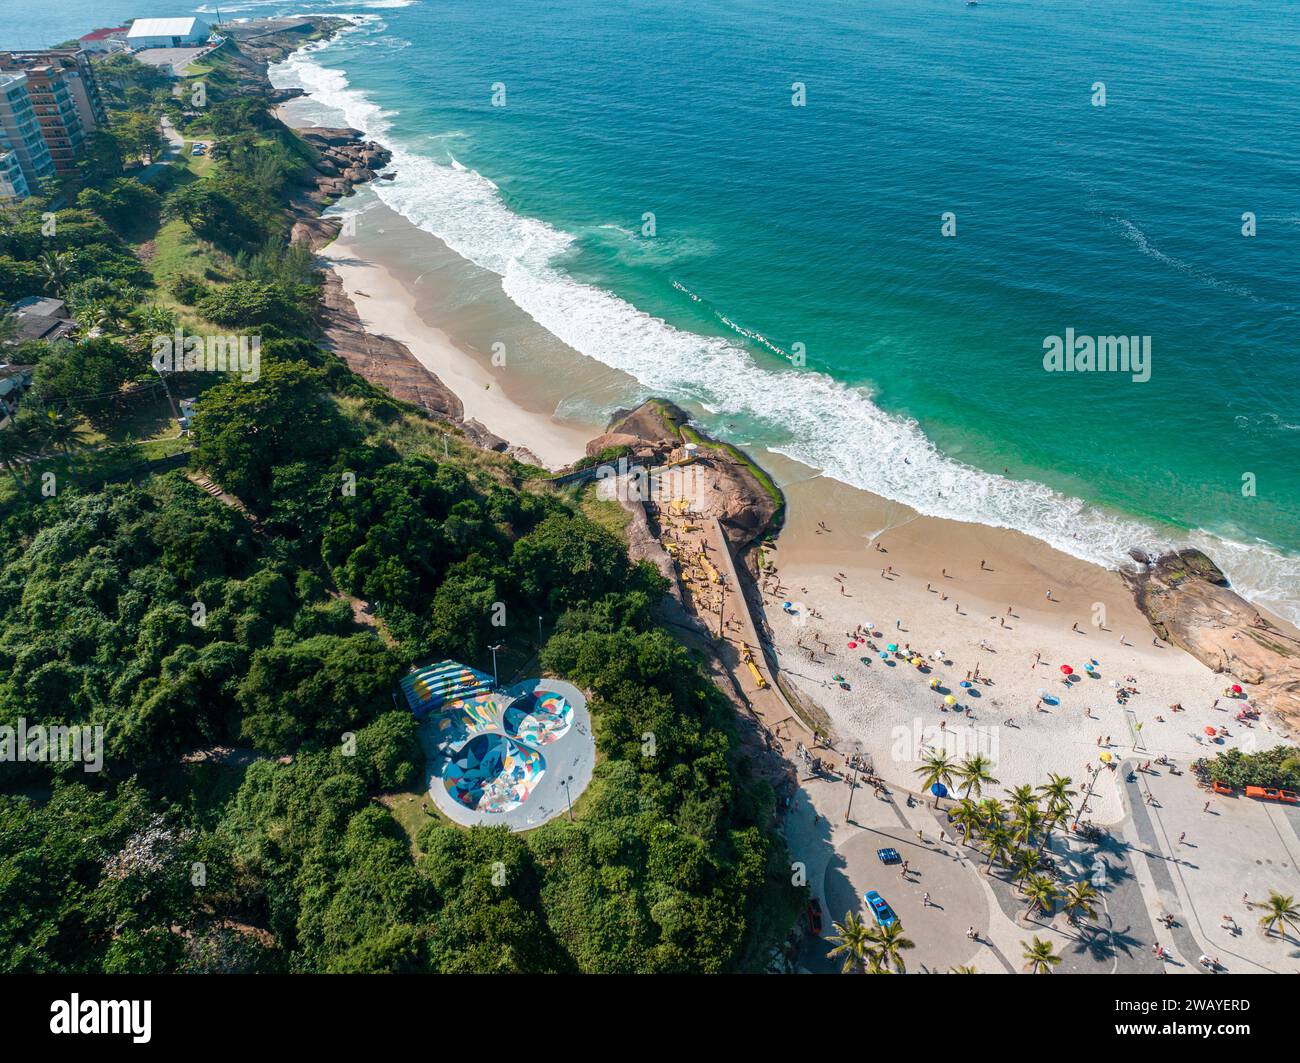 Vista aerea della spiaggia di Diabo. Persone che prendono il sole e giocano sulla spiaggia, sport di mare. Rio de Janeiro. Brasile Foto Stock